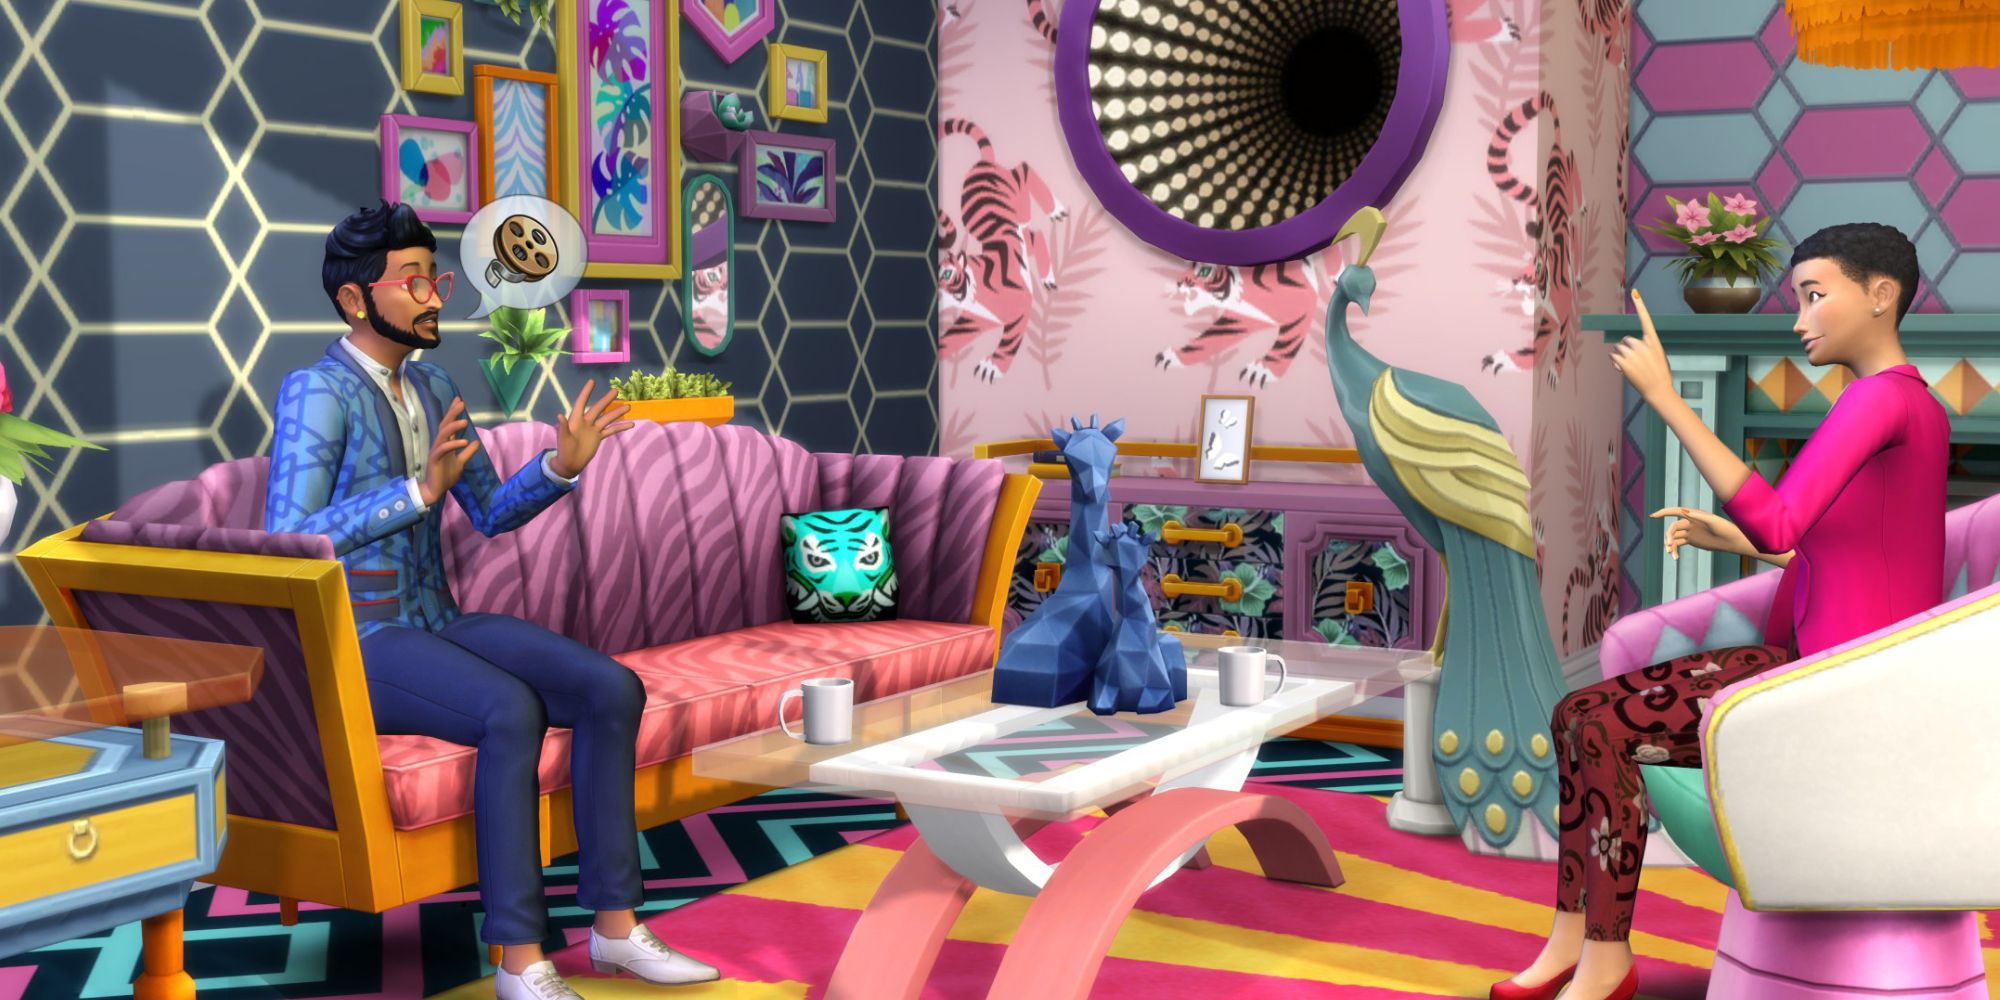 Helles Wohnzimmer von Sims 4 Decor To The Max, in dem sich zwei Sims unterhalten.